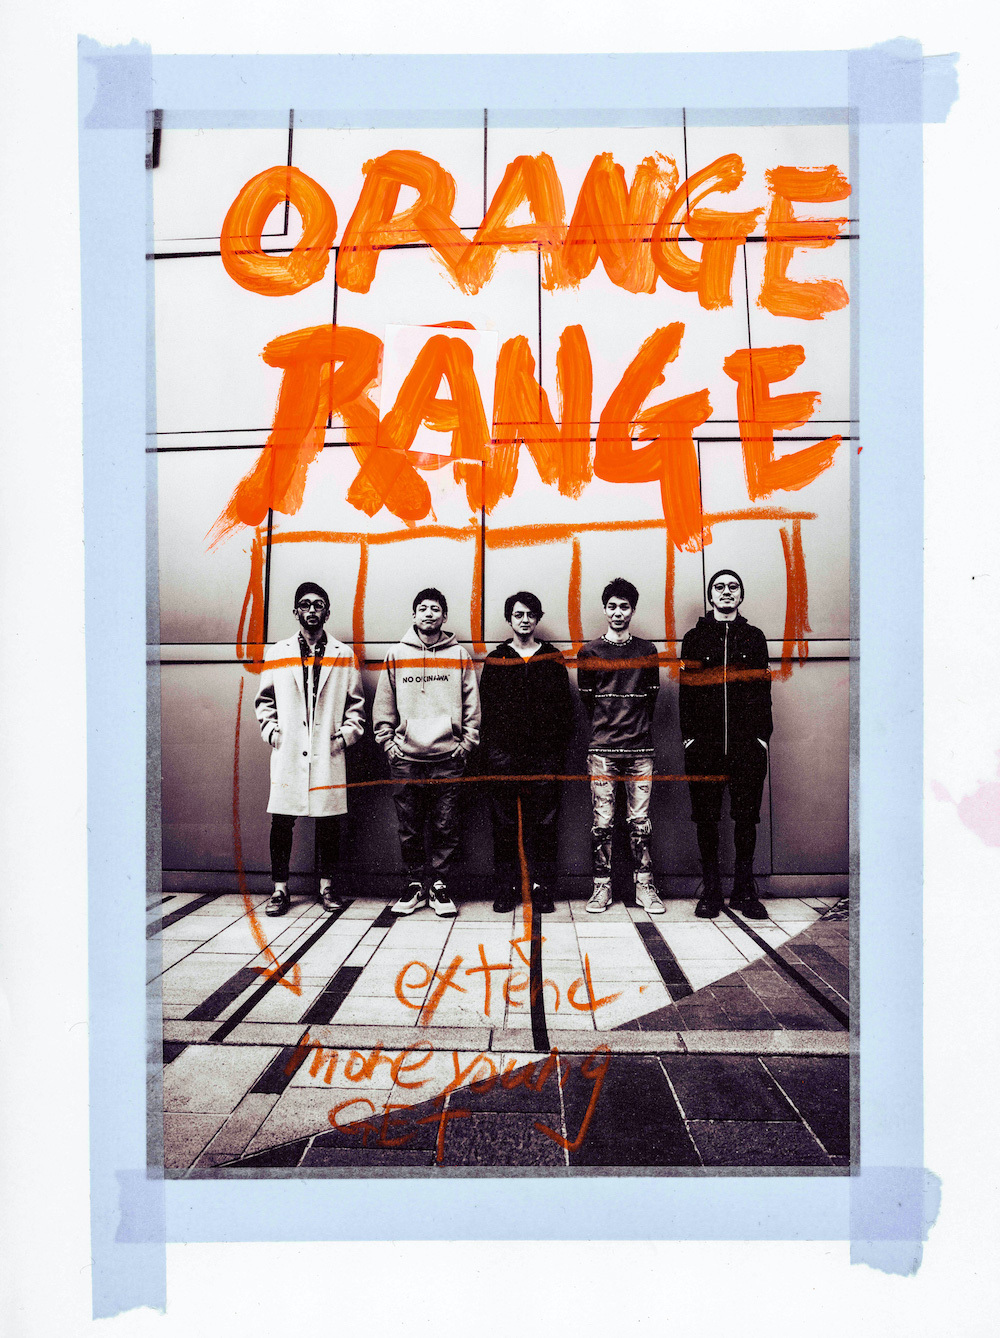 Orange Range 新曲が桐谷健太主演の沖縄 コザを舞台にした映画 ミラクルシティコザ 主題歌に決定 予告編も公開に Spice エンタメ特化型情報メディア スパイス